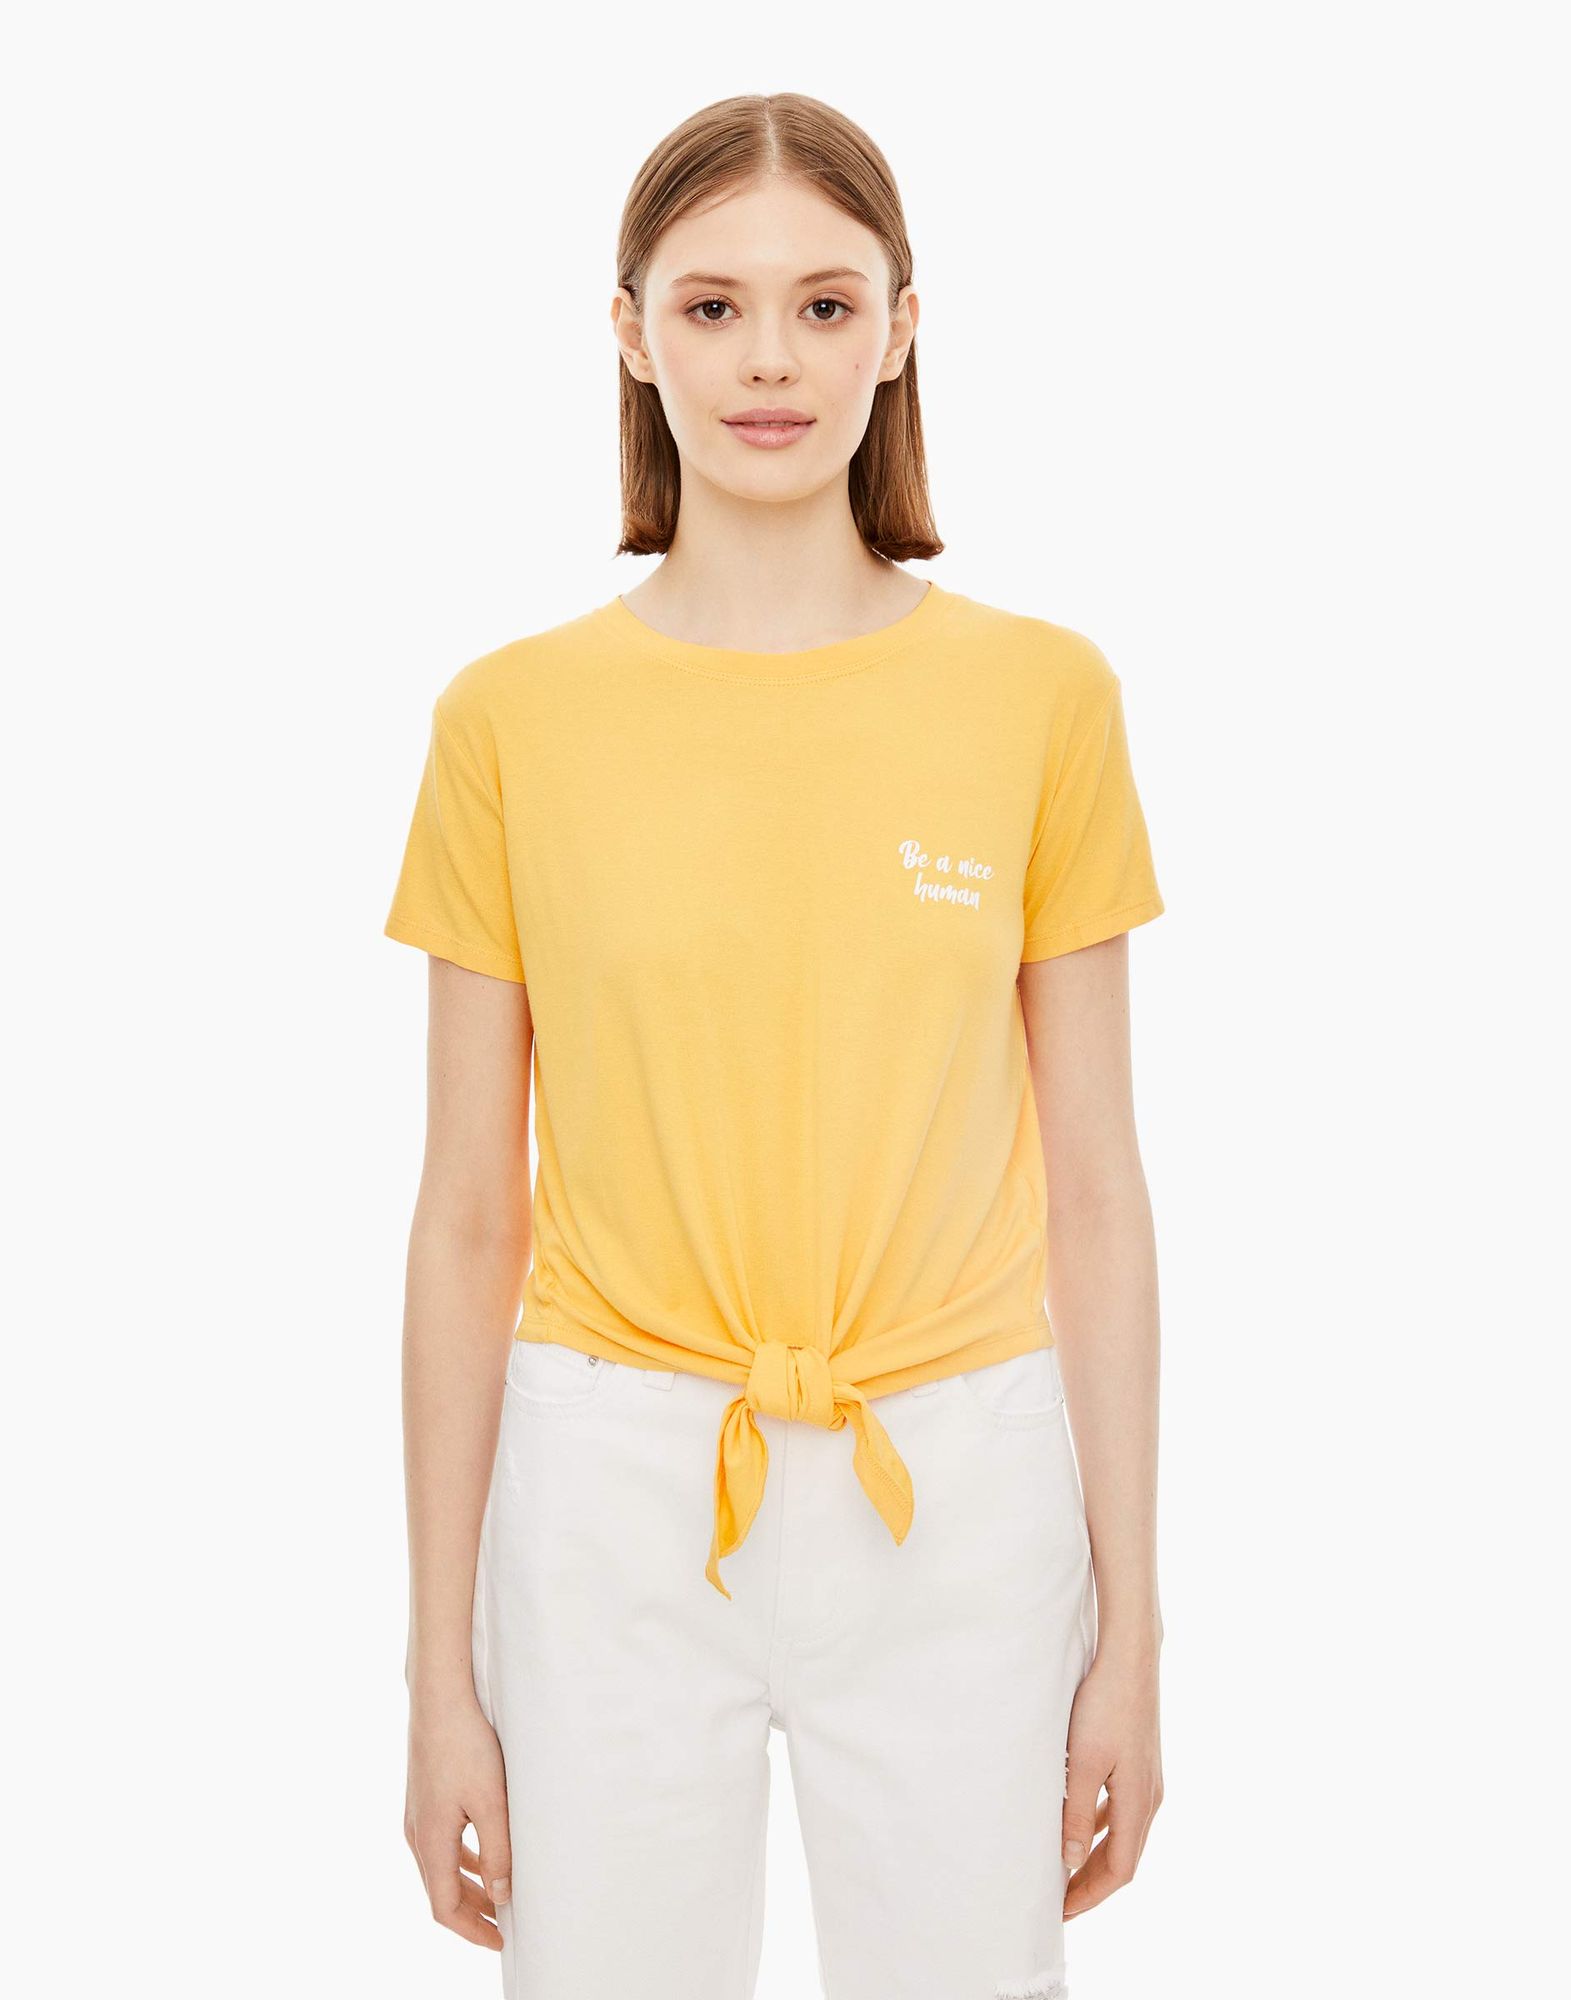 Жёлтая футболка с завязками и надписью женская-2